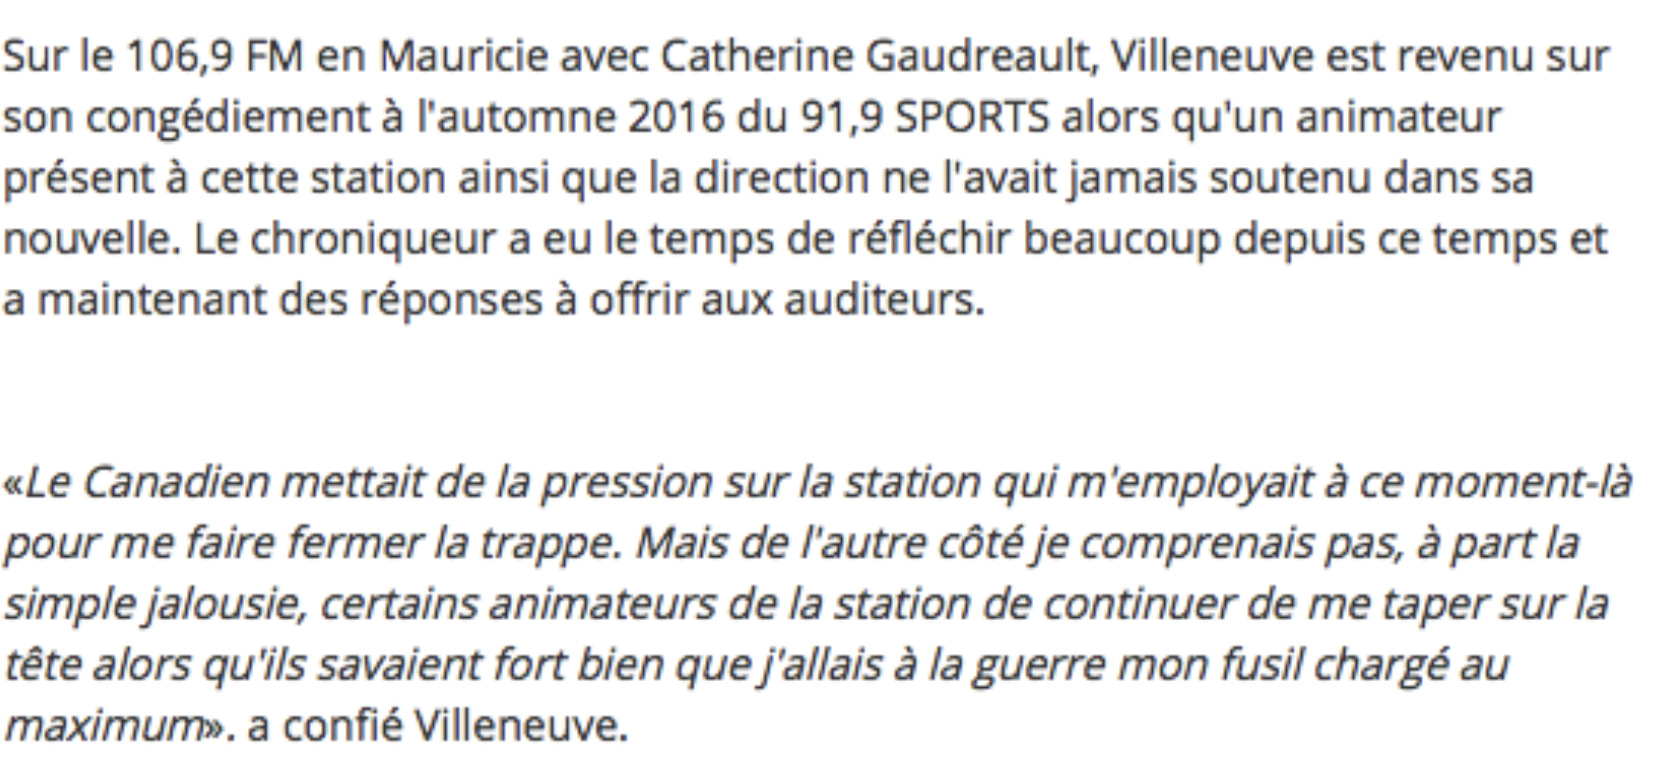 SCANDALE: Jean-Charles Lajoie et Michel Therrien ont MANIGANCÉ le CONGÉDIEMENT de Michel Villeneuve!!